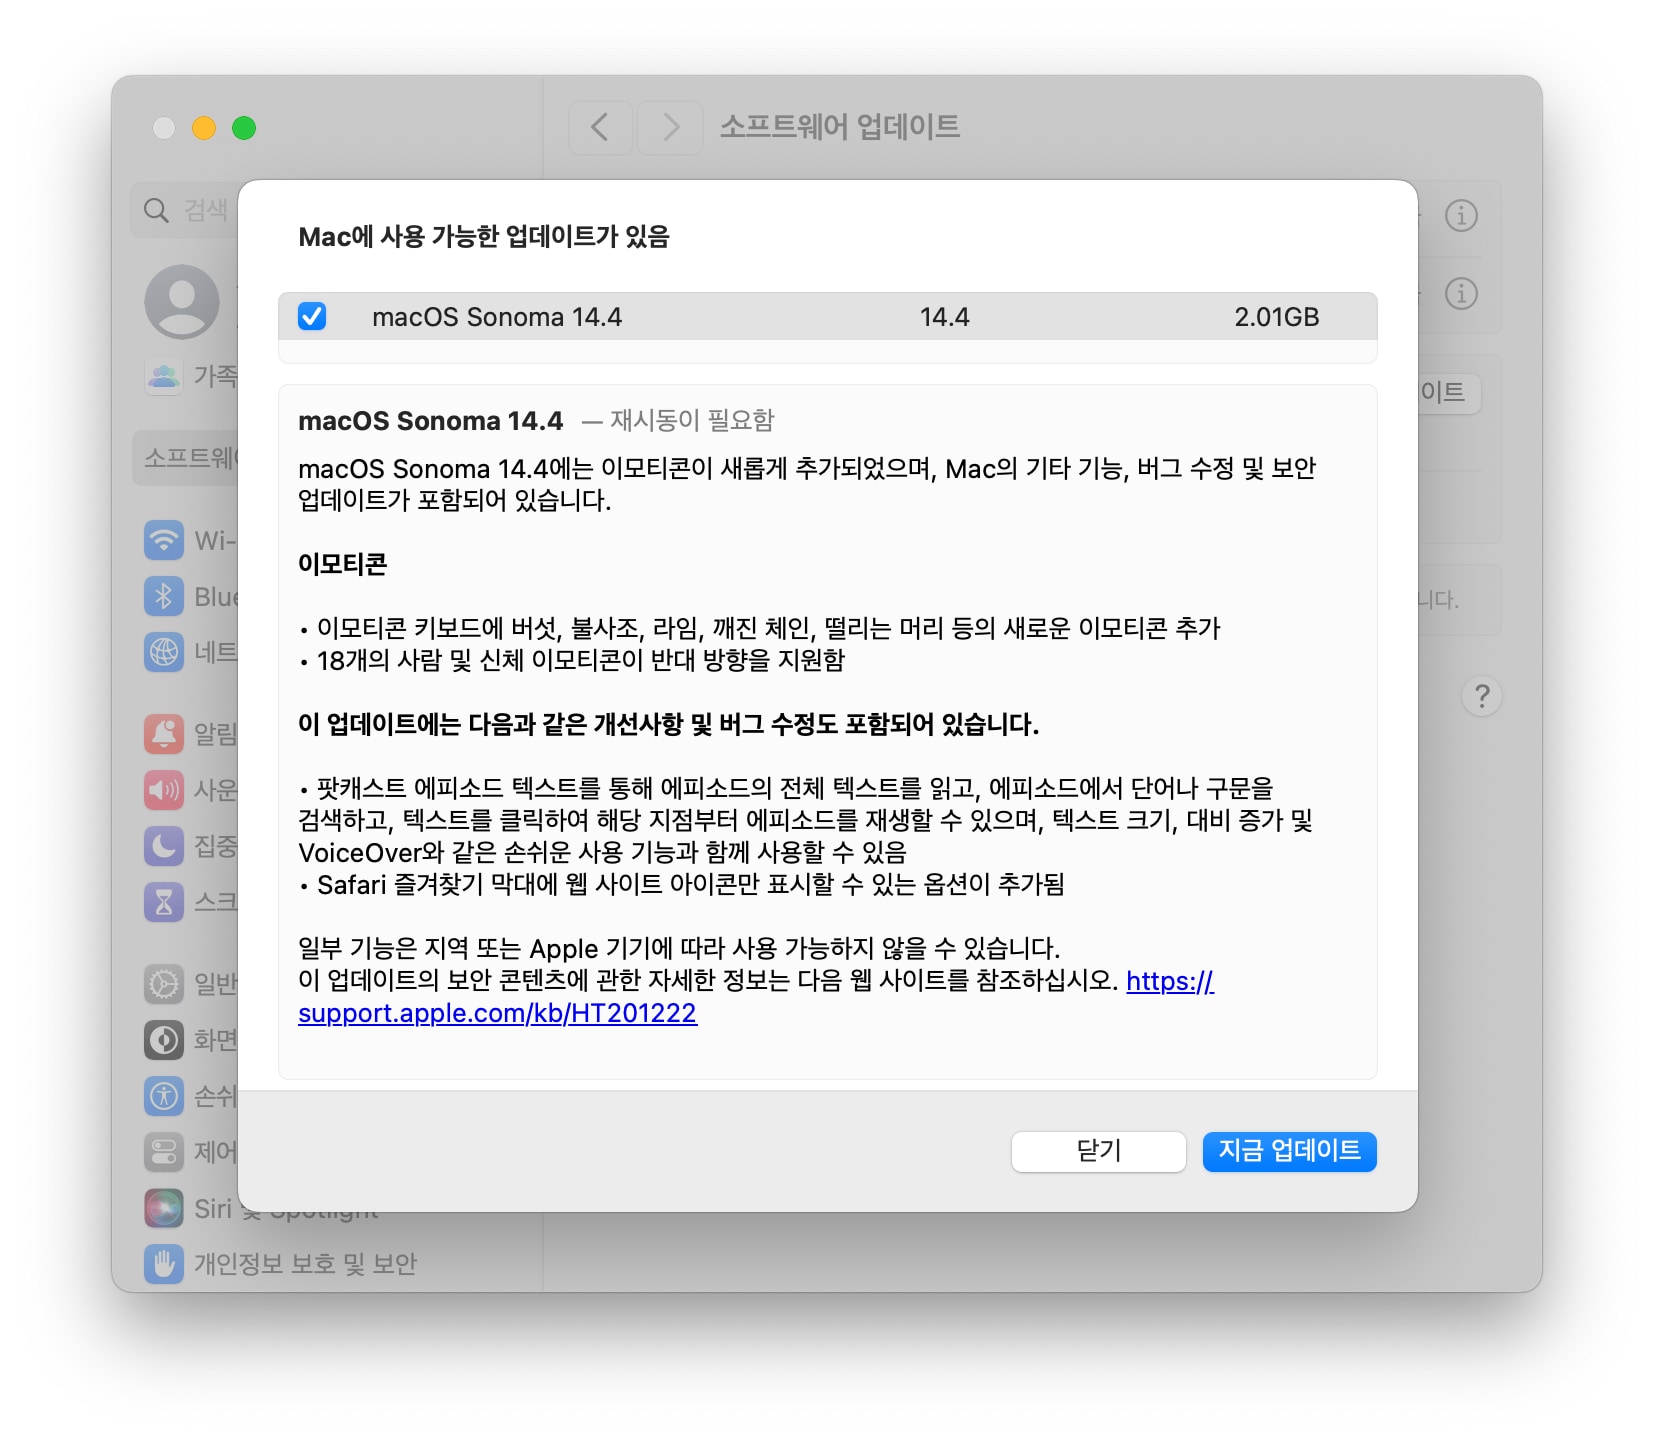 맥OS 소노마 14.4 업데이트 내용 및 용량